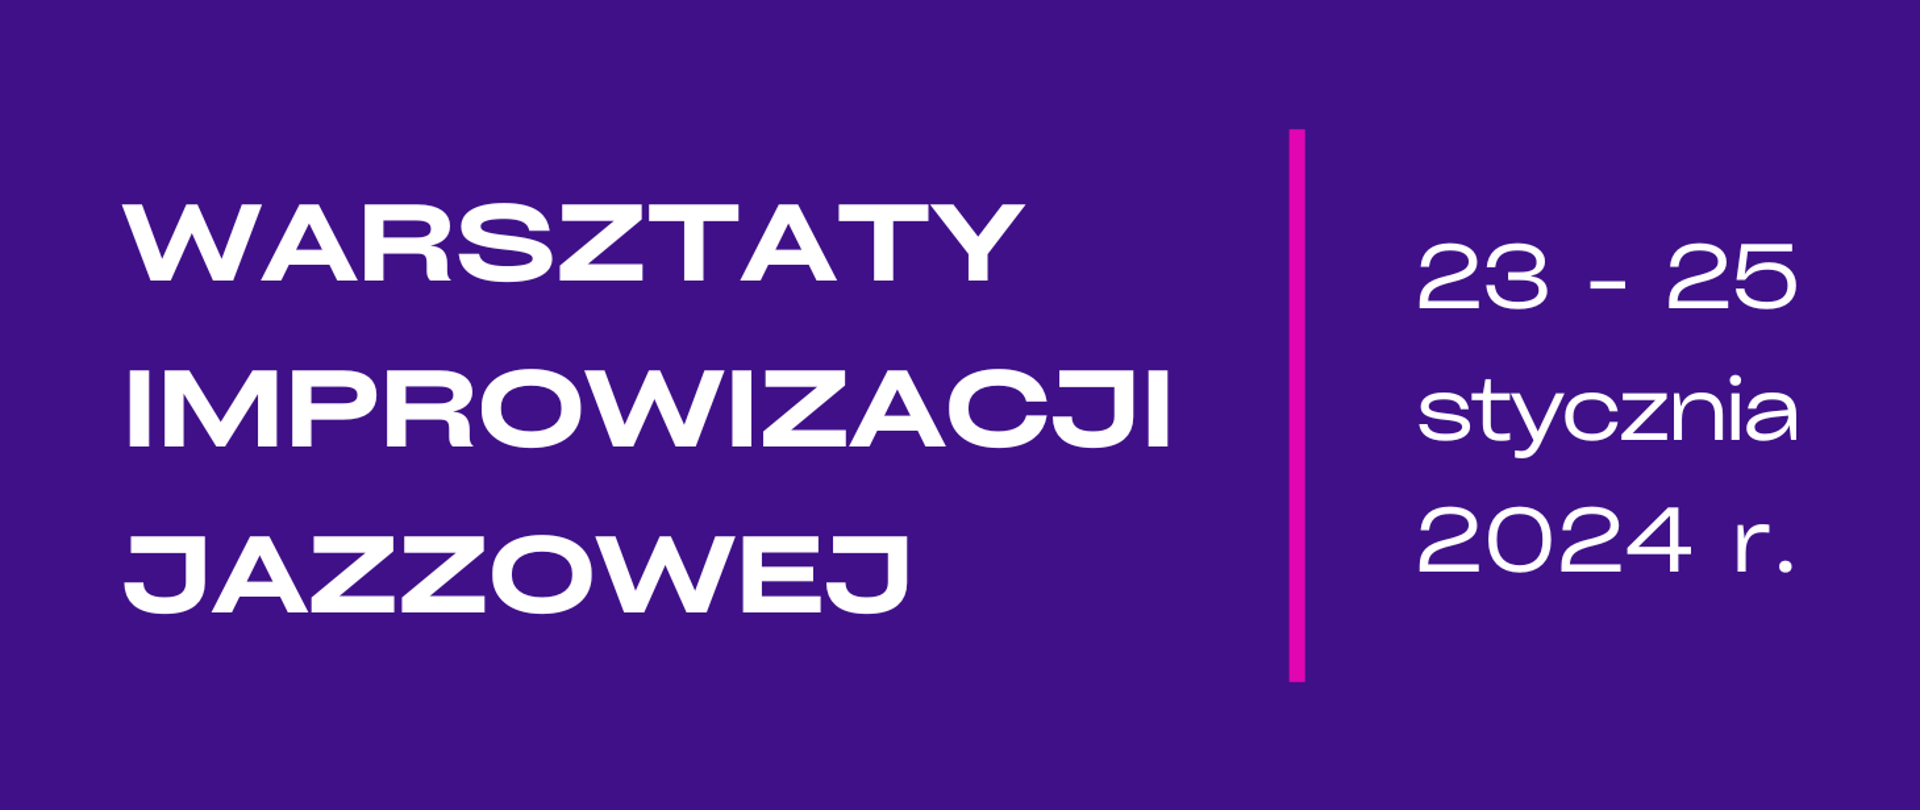 Na fioletowym tle białą czcionką napis Warsztaty Improwizacji Jazzowej oraz data 23-25 stycznia 2024 r. 